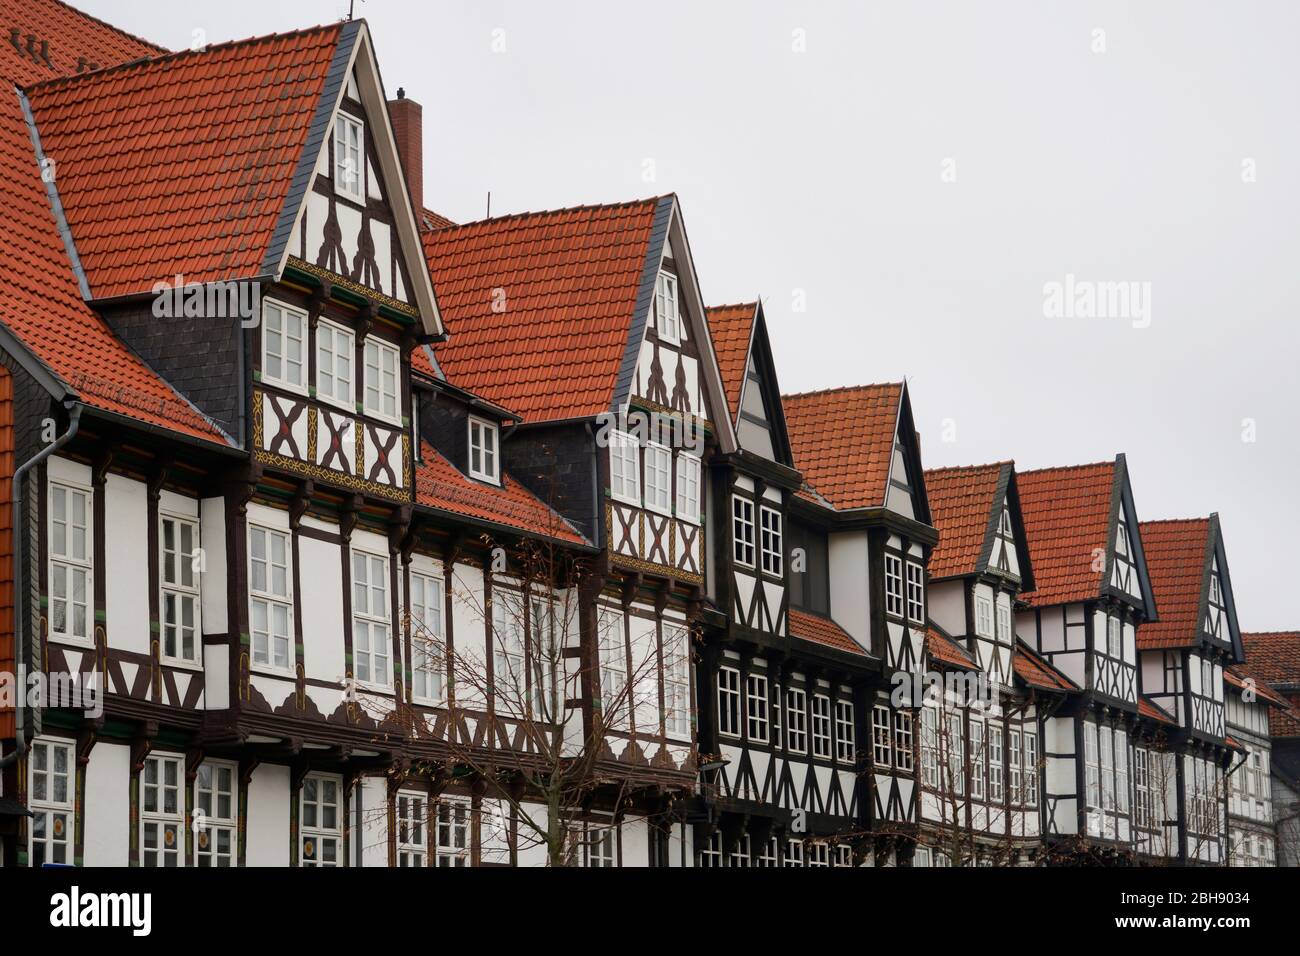 Deutschland, Niedersachsen, Wolfenbüttel, Altstadt, Fachwerkhäuser, Dachgauben, dettaglio Foto Stock